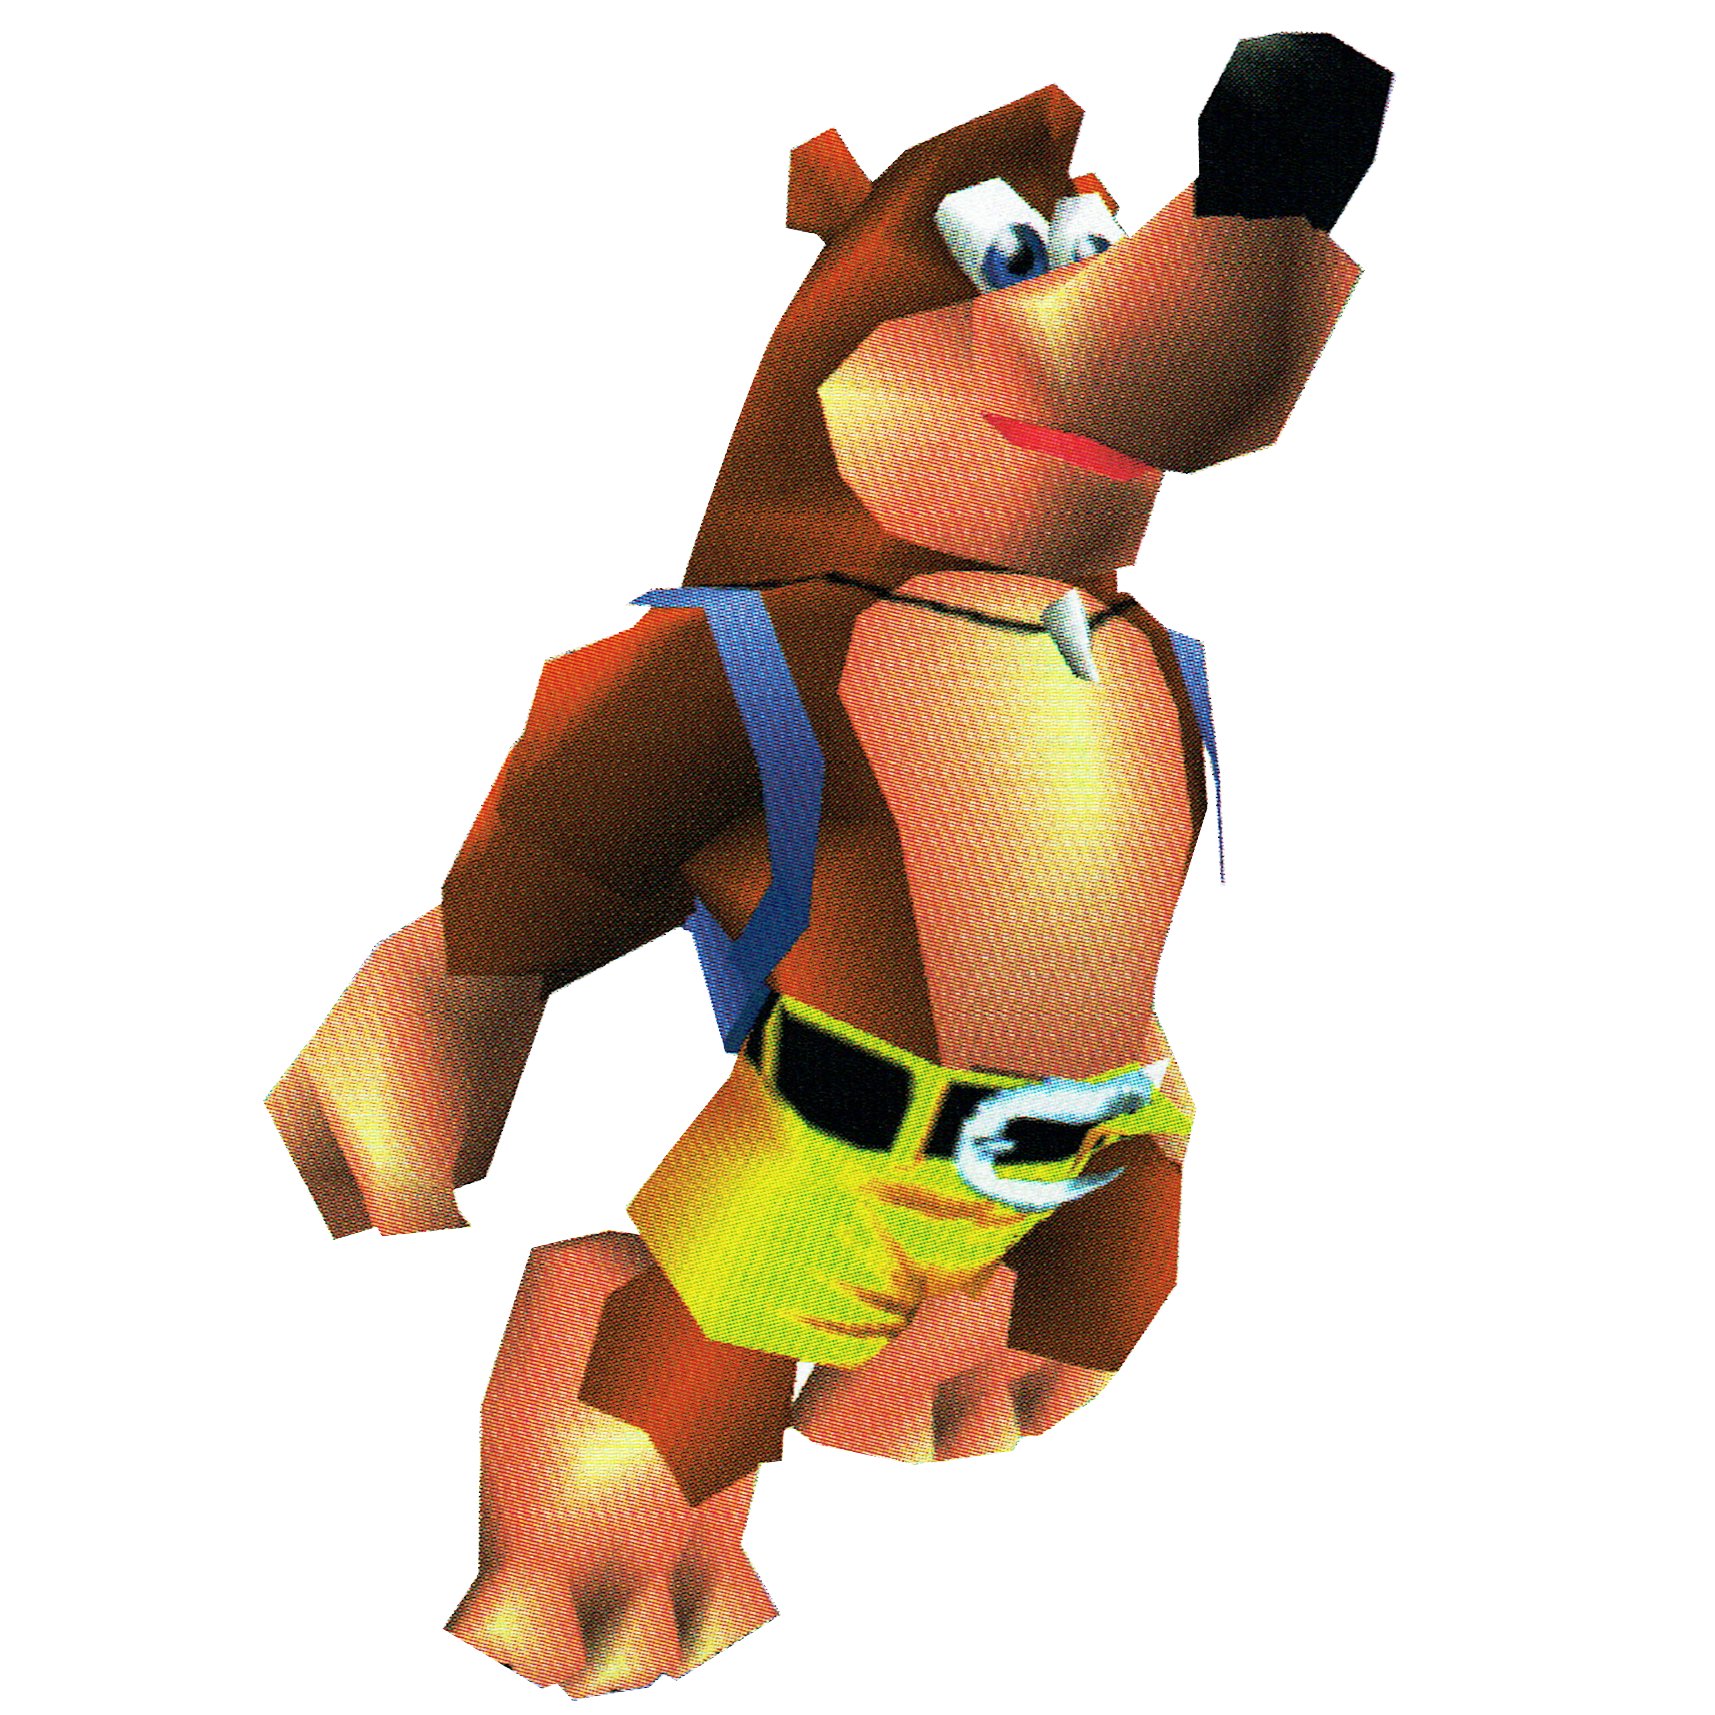 Hack] Banjo-Kazooie: The Bear Waker (Nintendo 64) – Otakufreaks